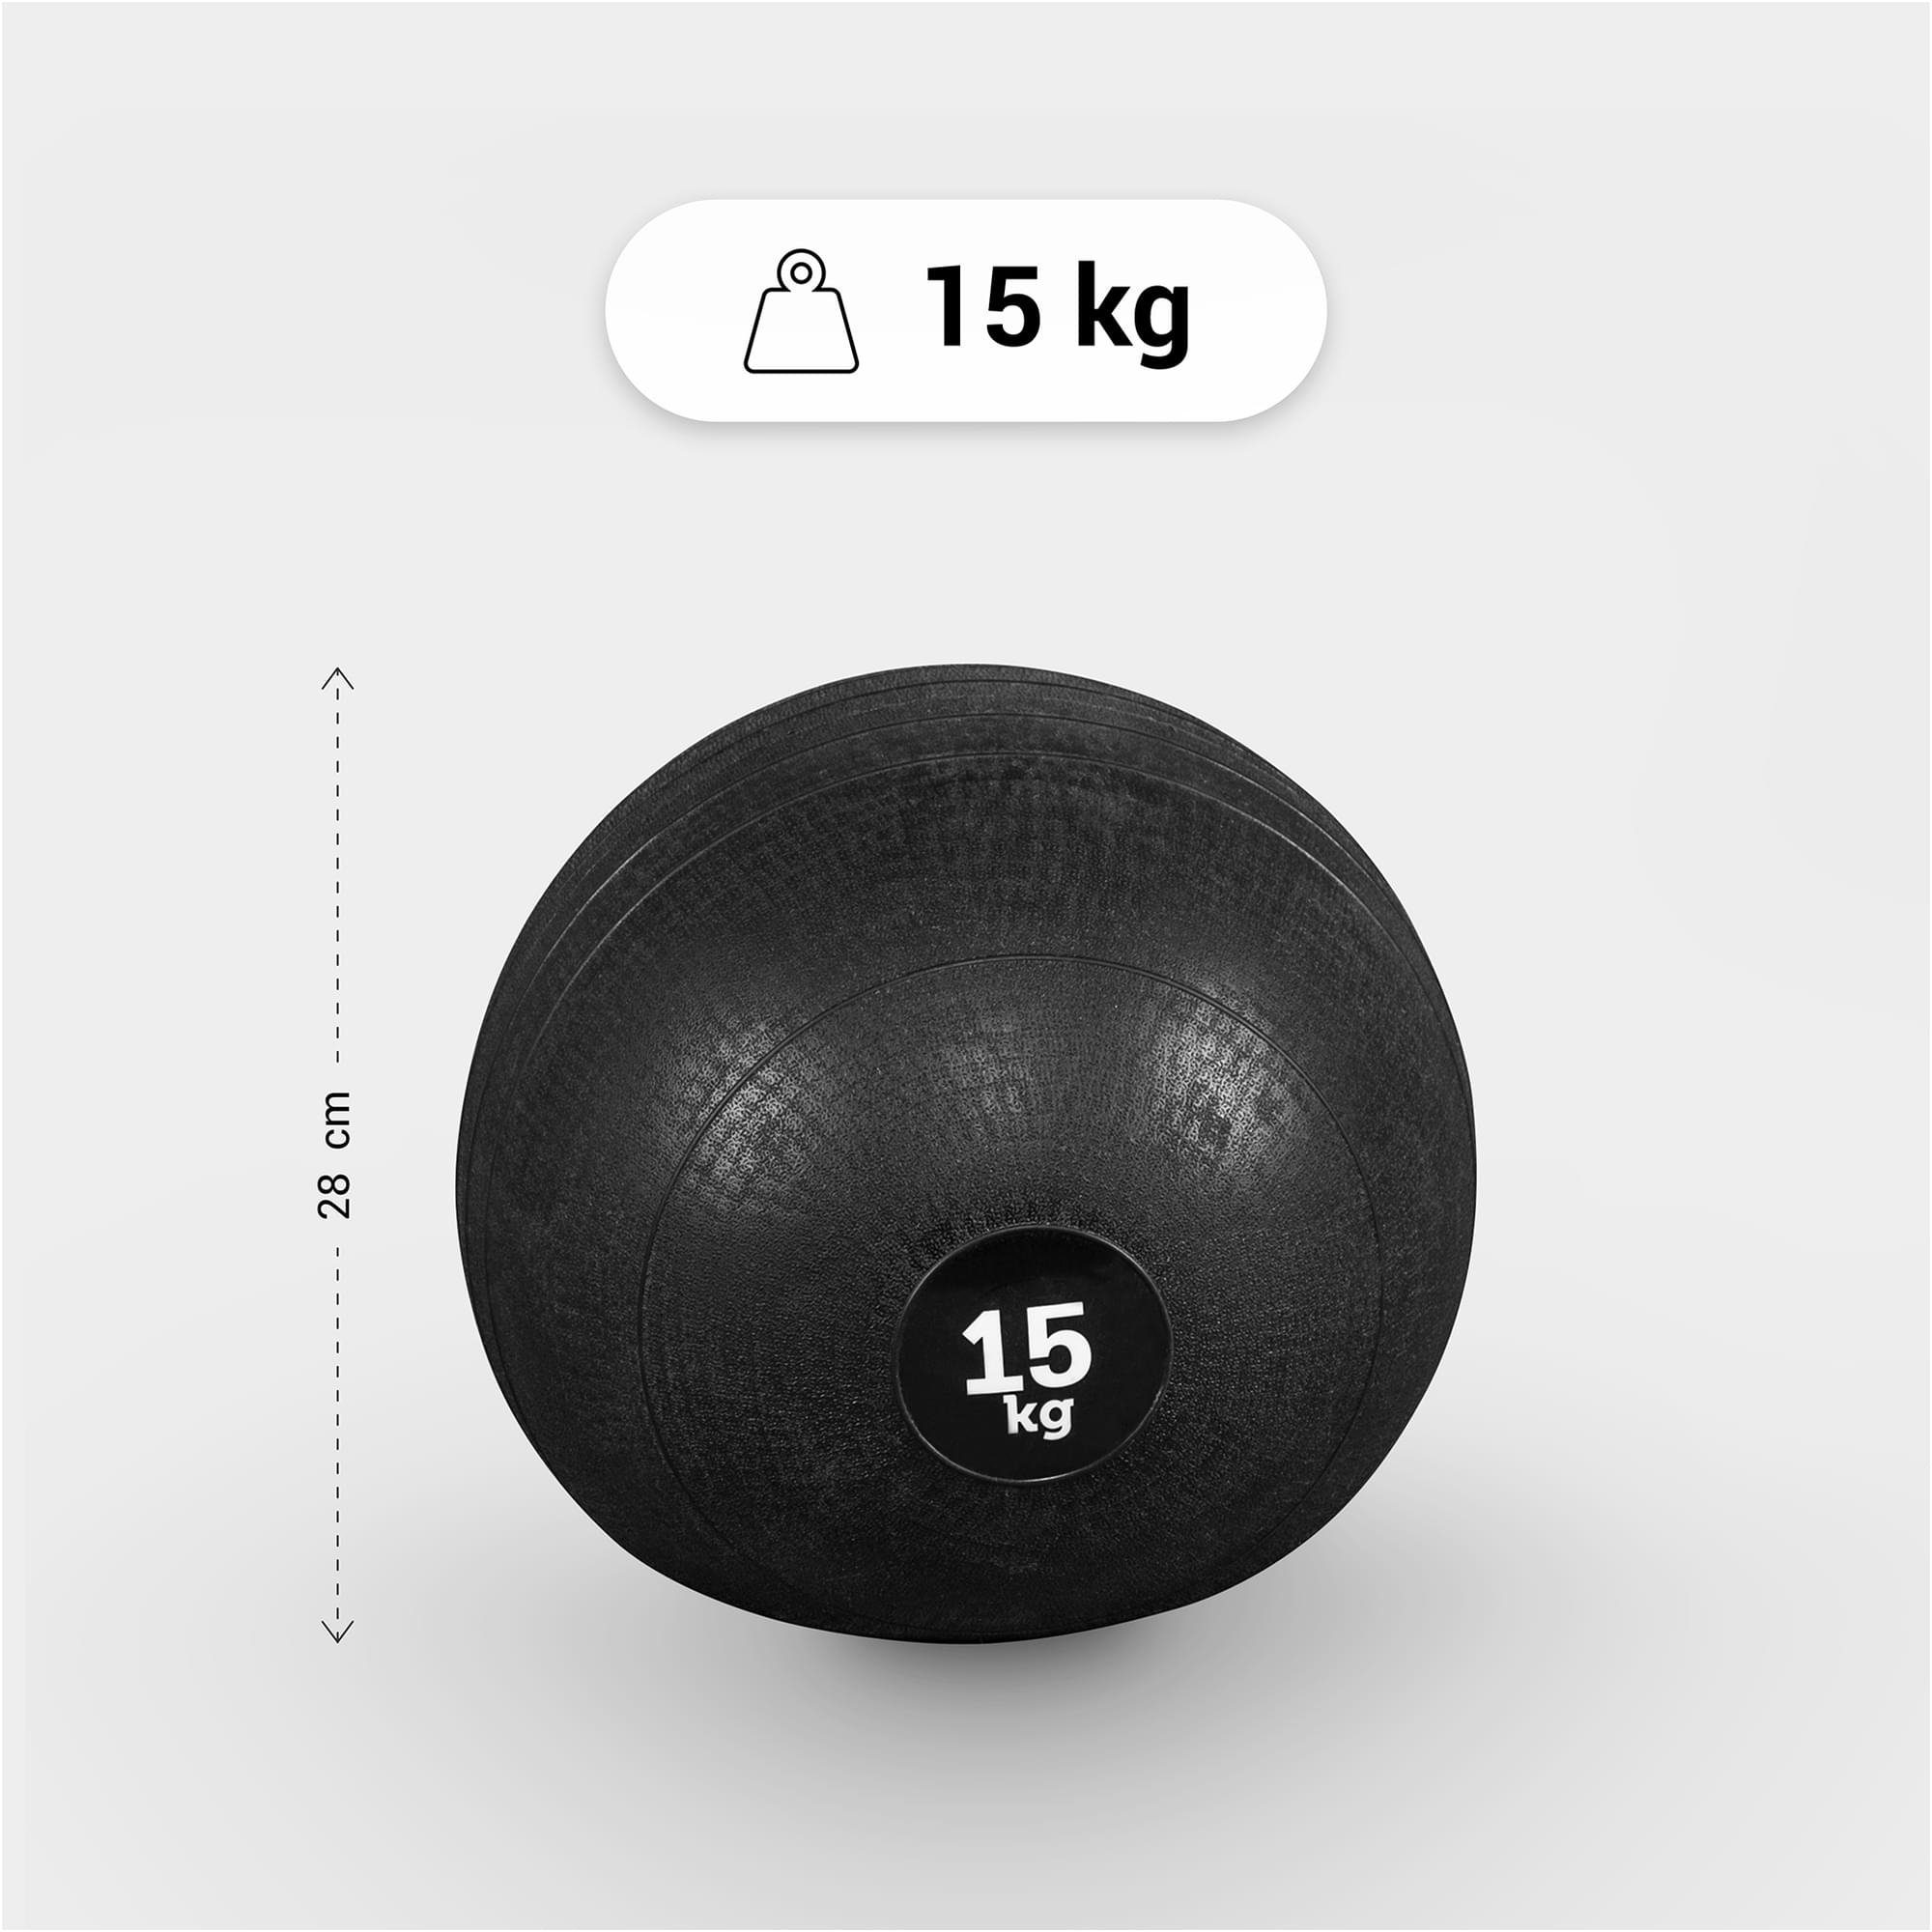 Medizinball SPORTS 10kg, Oberfläche Einzeln/Set, GORILLA 7kg, 25kg 15kg, 3kg, mit 20kg, Set 5kg, Griffiger